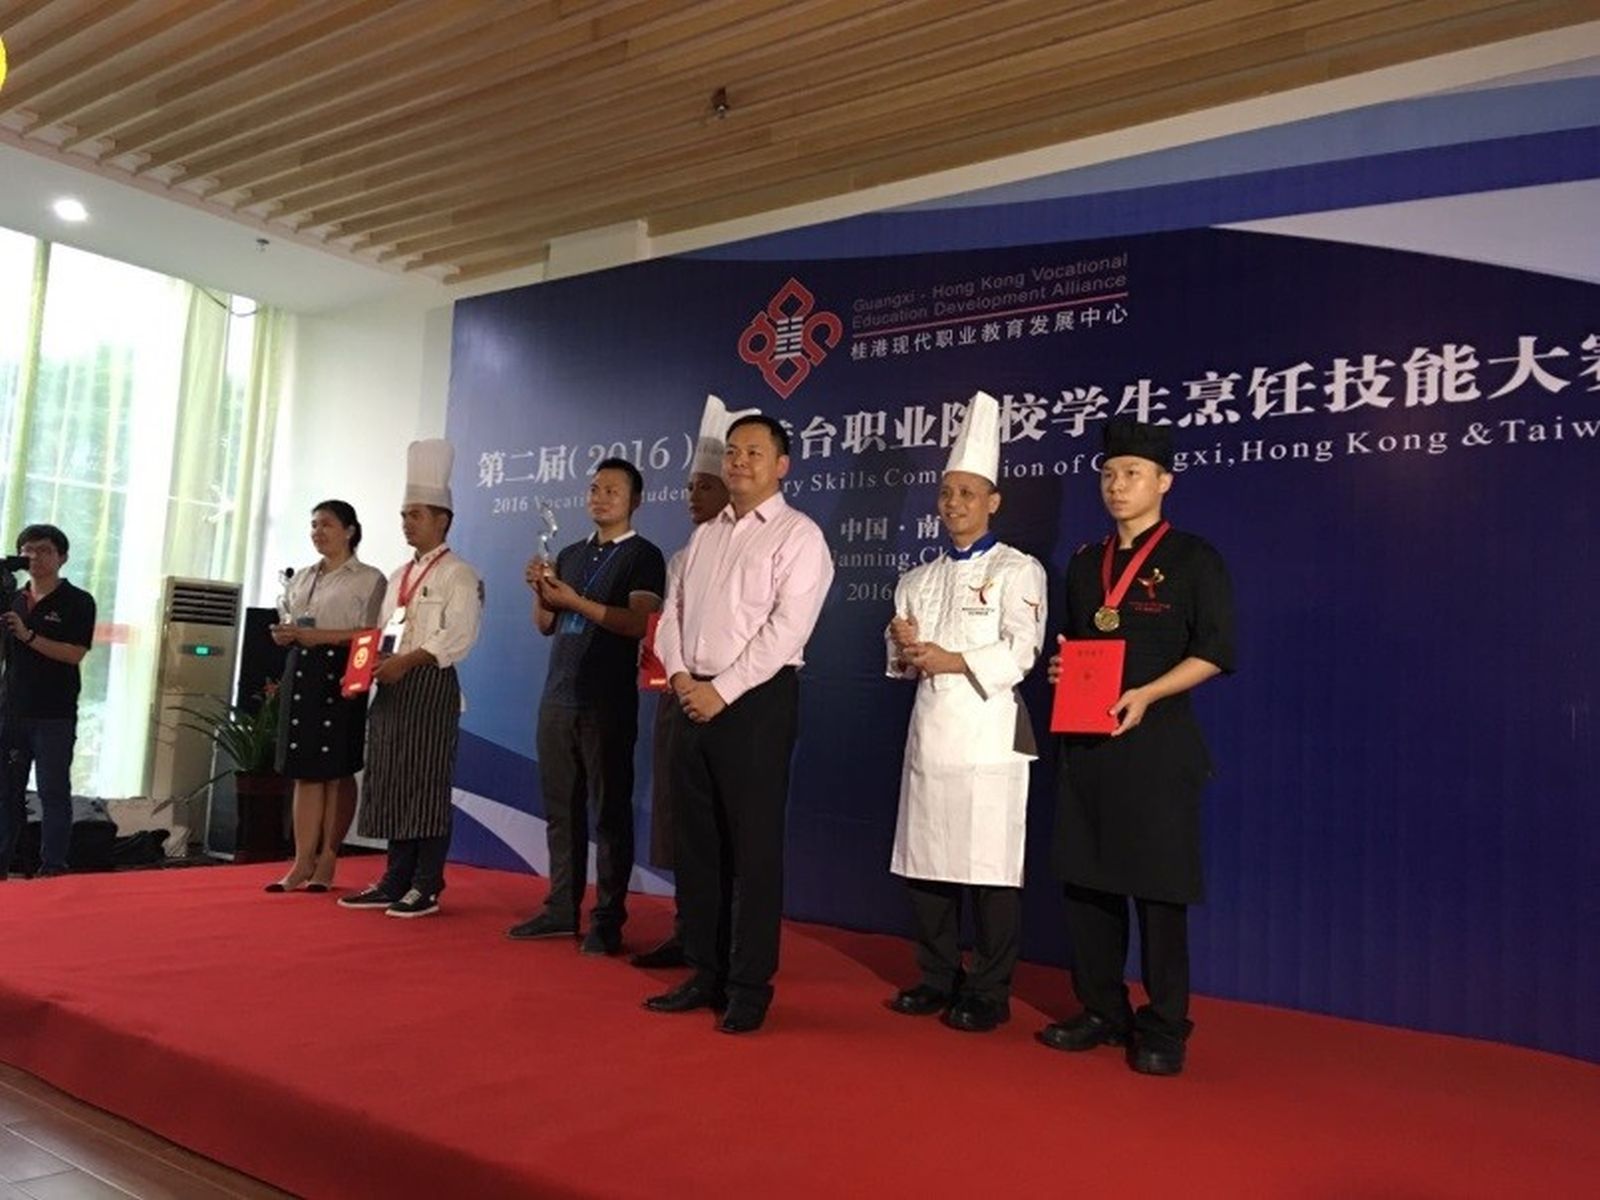 中華廚藝學院
再次勇奪兩大國際賽獎項